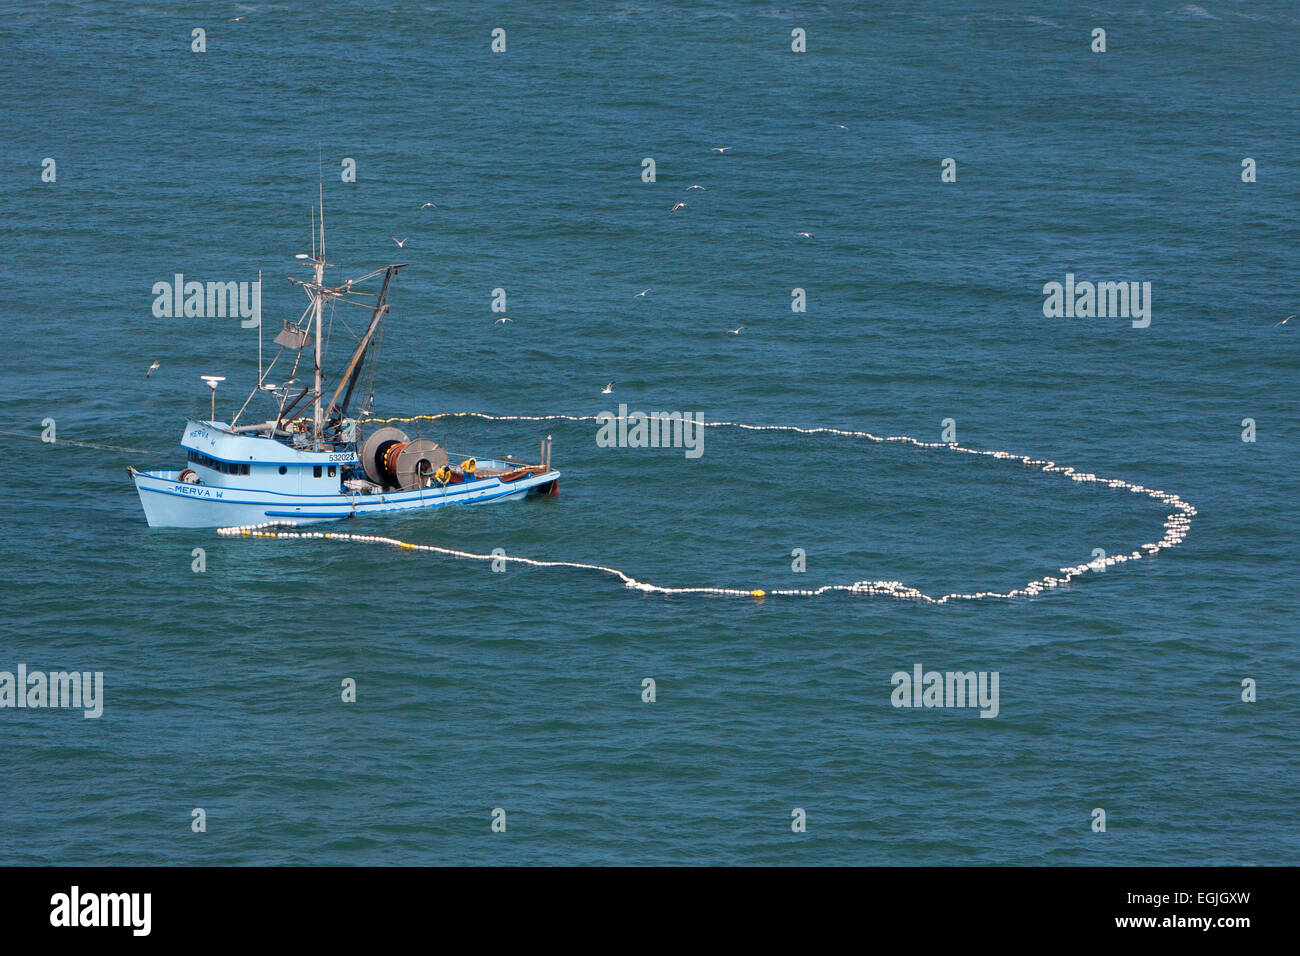 La pesca di acciughe con net (rete a circuizione) in un cerchio da barca nella baia di San Francisco, California, Stati Uniti d'America in giugno Foto Stock